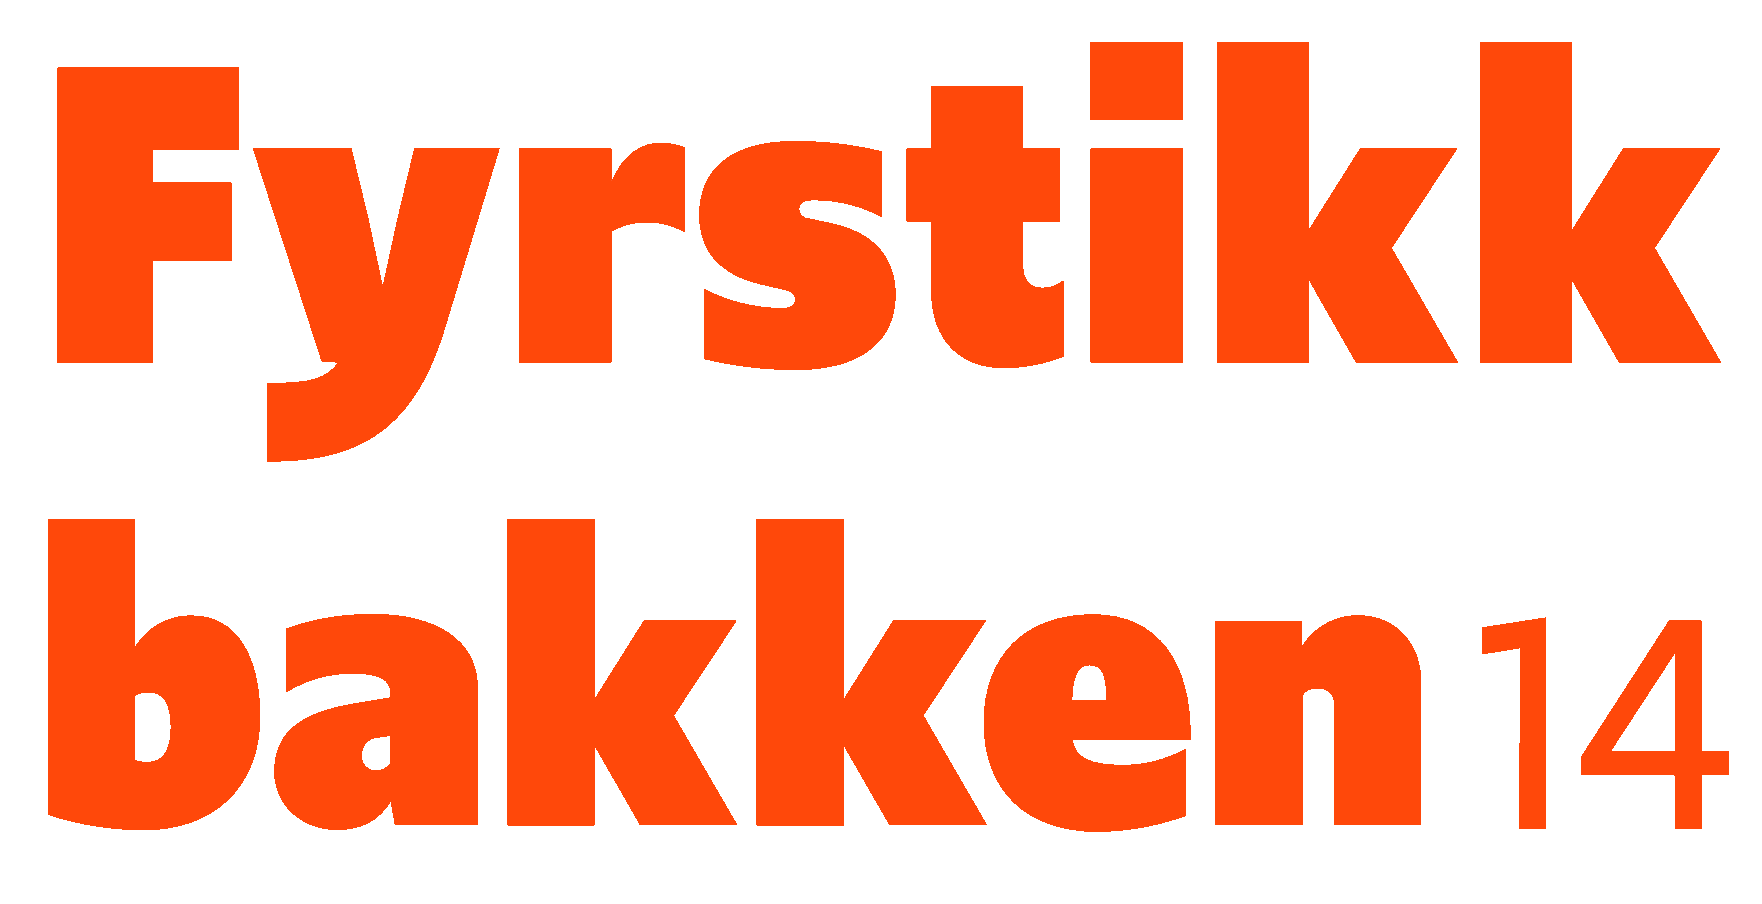 Logoen for Fyrstikkbakken 14.